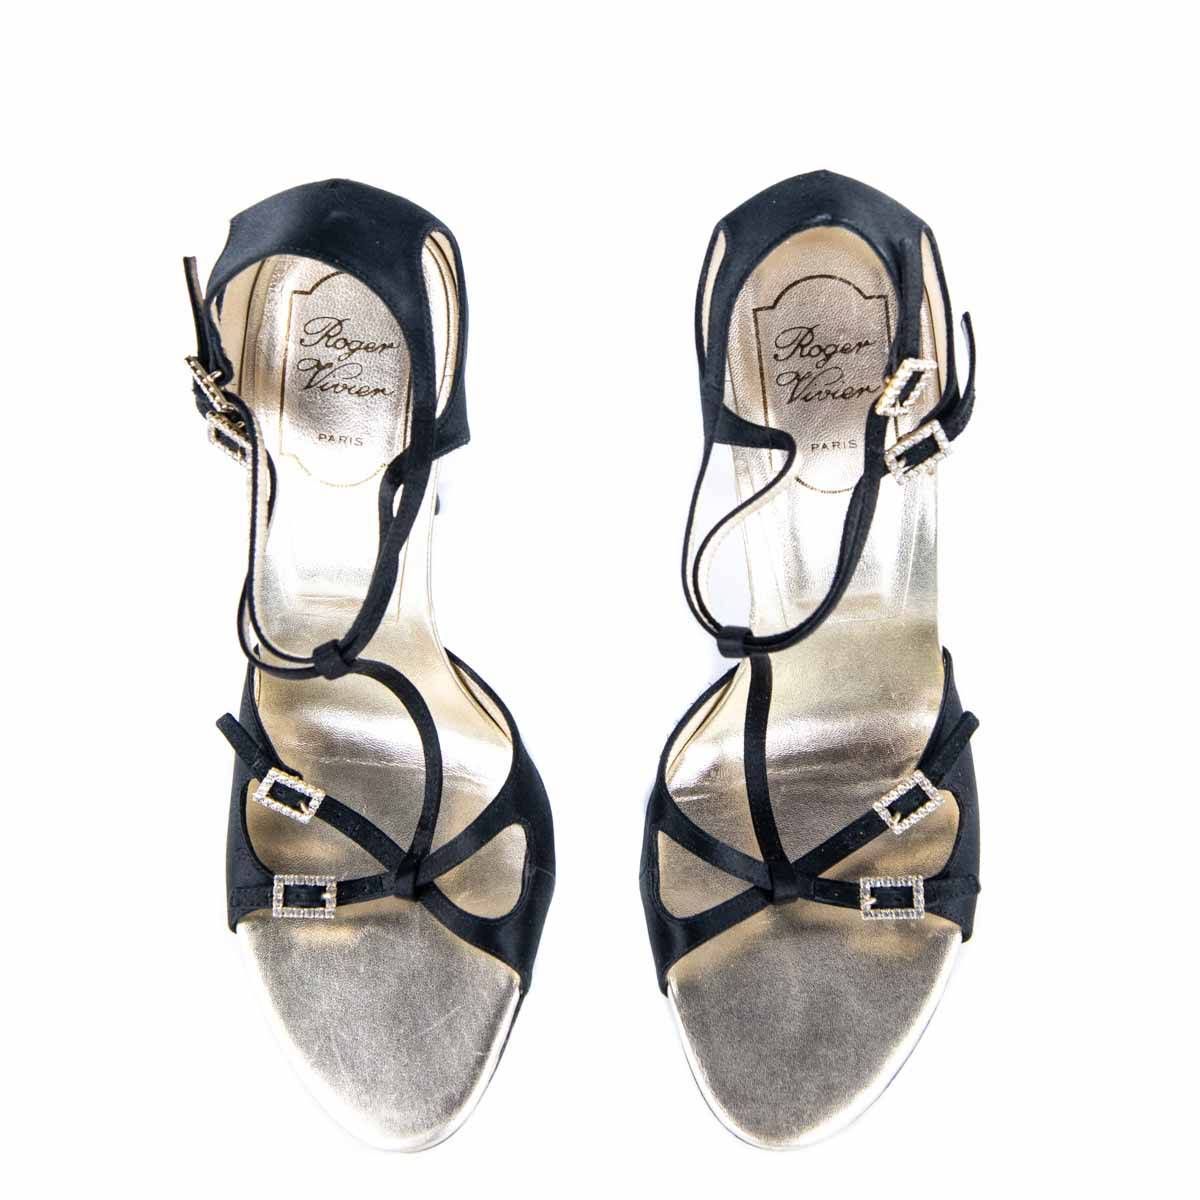 Roger Vivier Black Satin Embellished Sandals Size US 7.5 | EU 37.5 - Love that Bag etc - Preowned Authentic Designer Handbags & Preloved Fashions